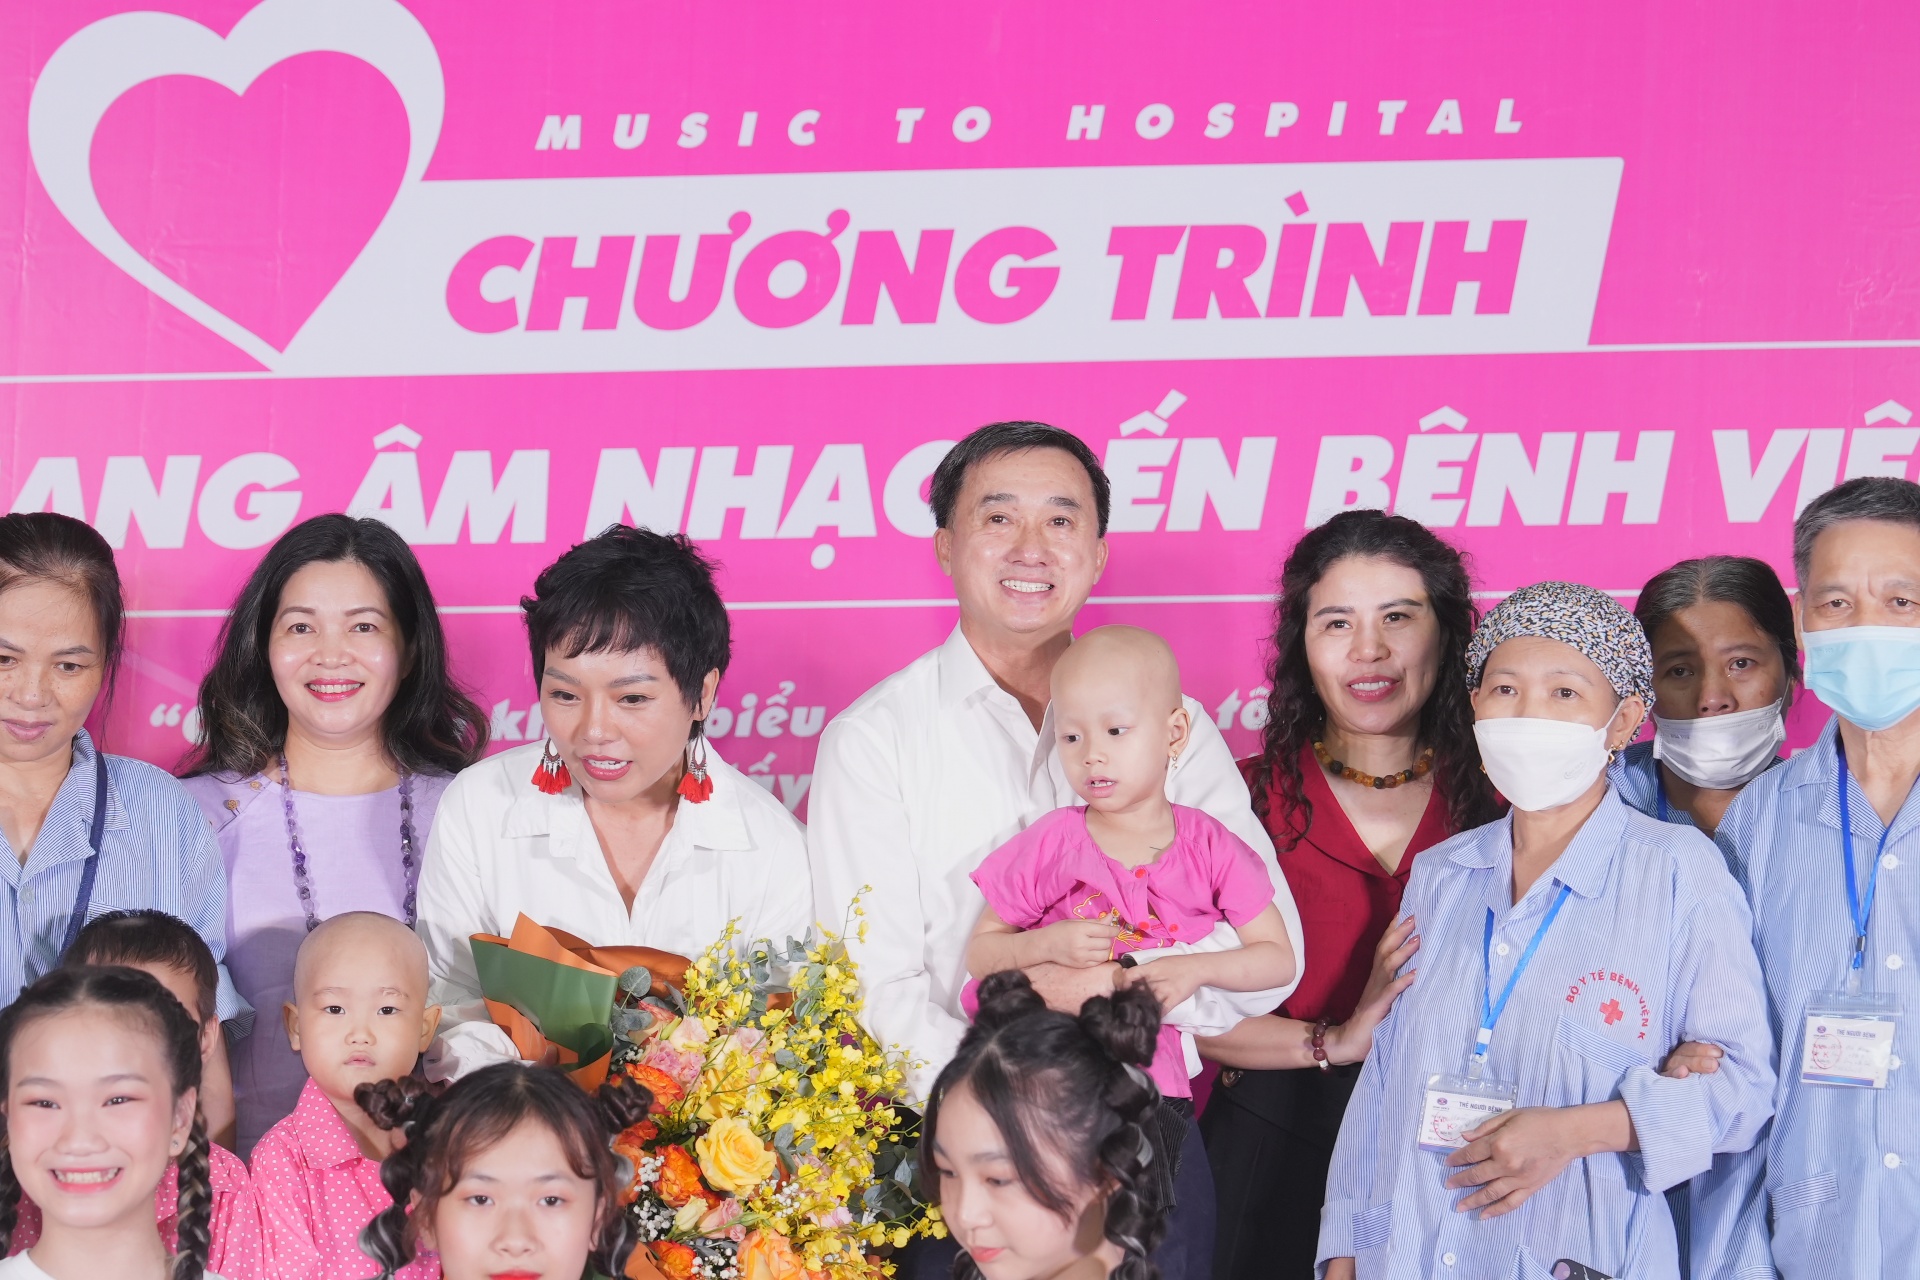 “Mang âm nhạc đến bệnh viện” xoa dịu nỗi đau cho bệnh nhân ung thư